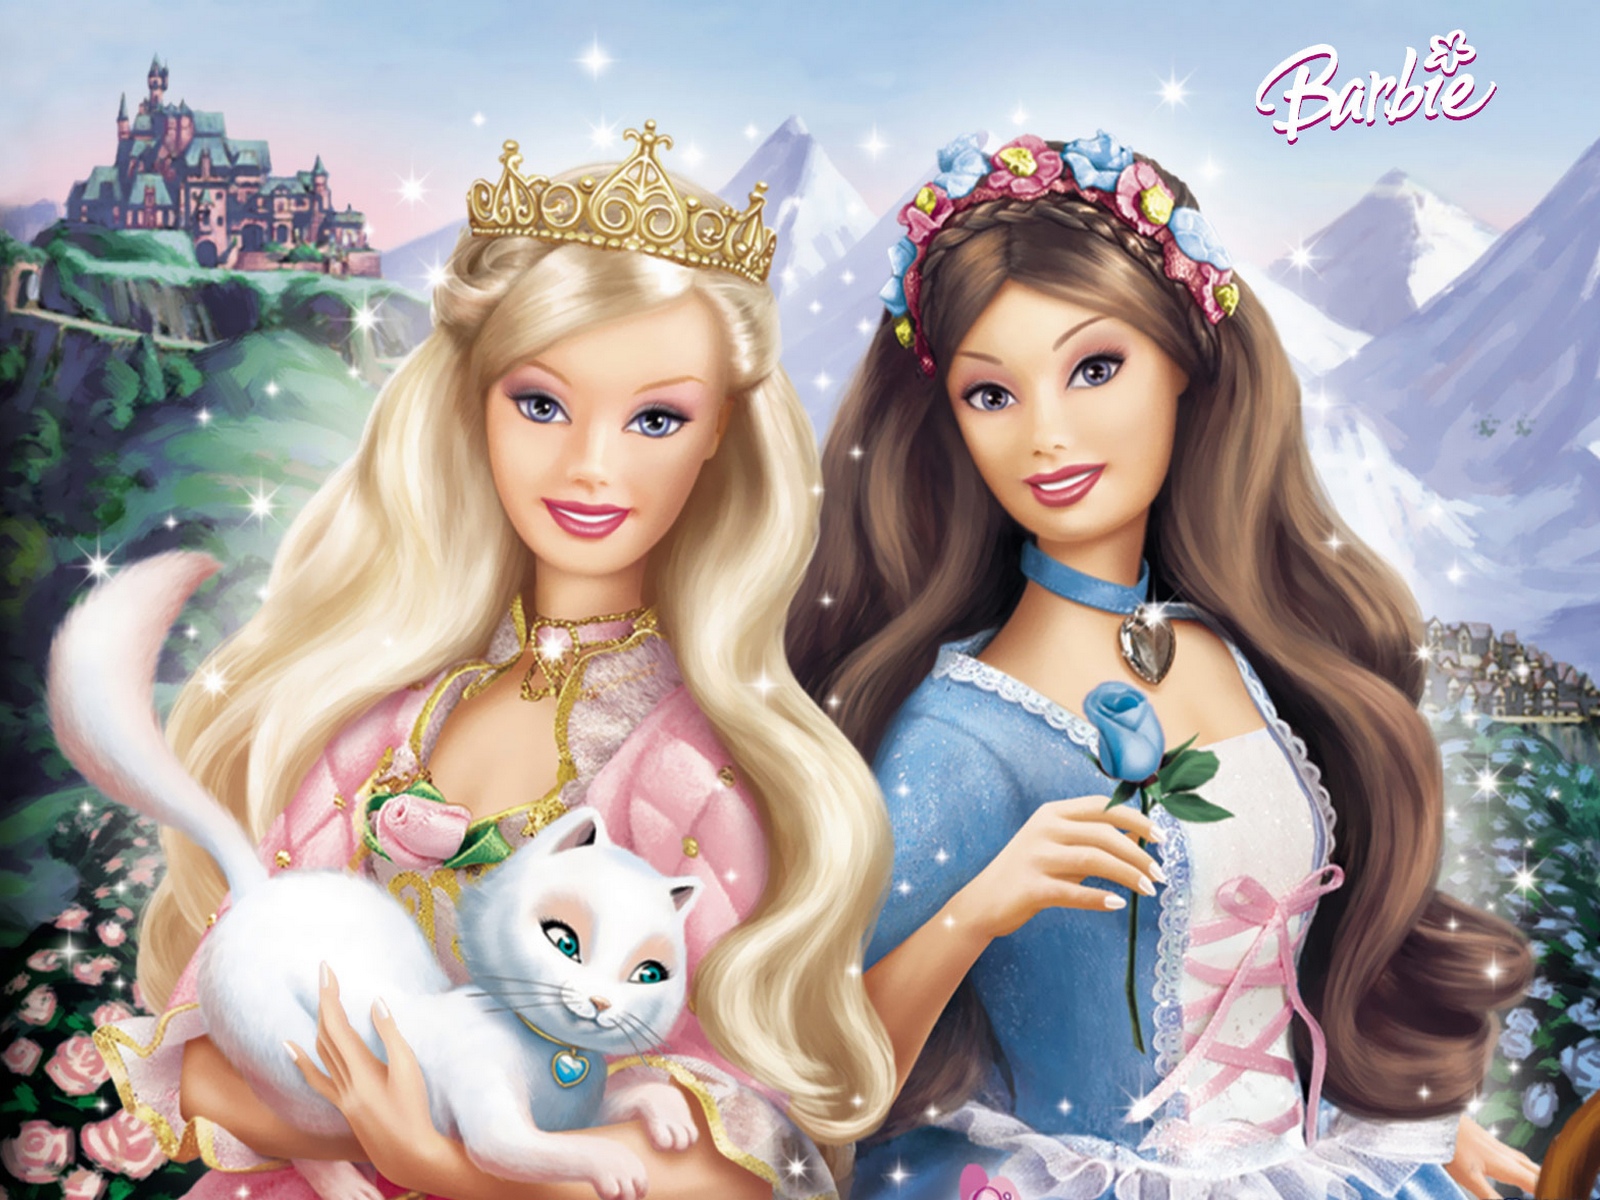 Fonds d'ecran Barbie Dessins animés télécharger photo